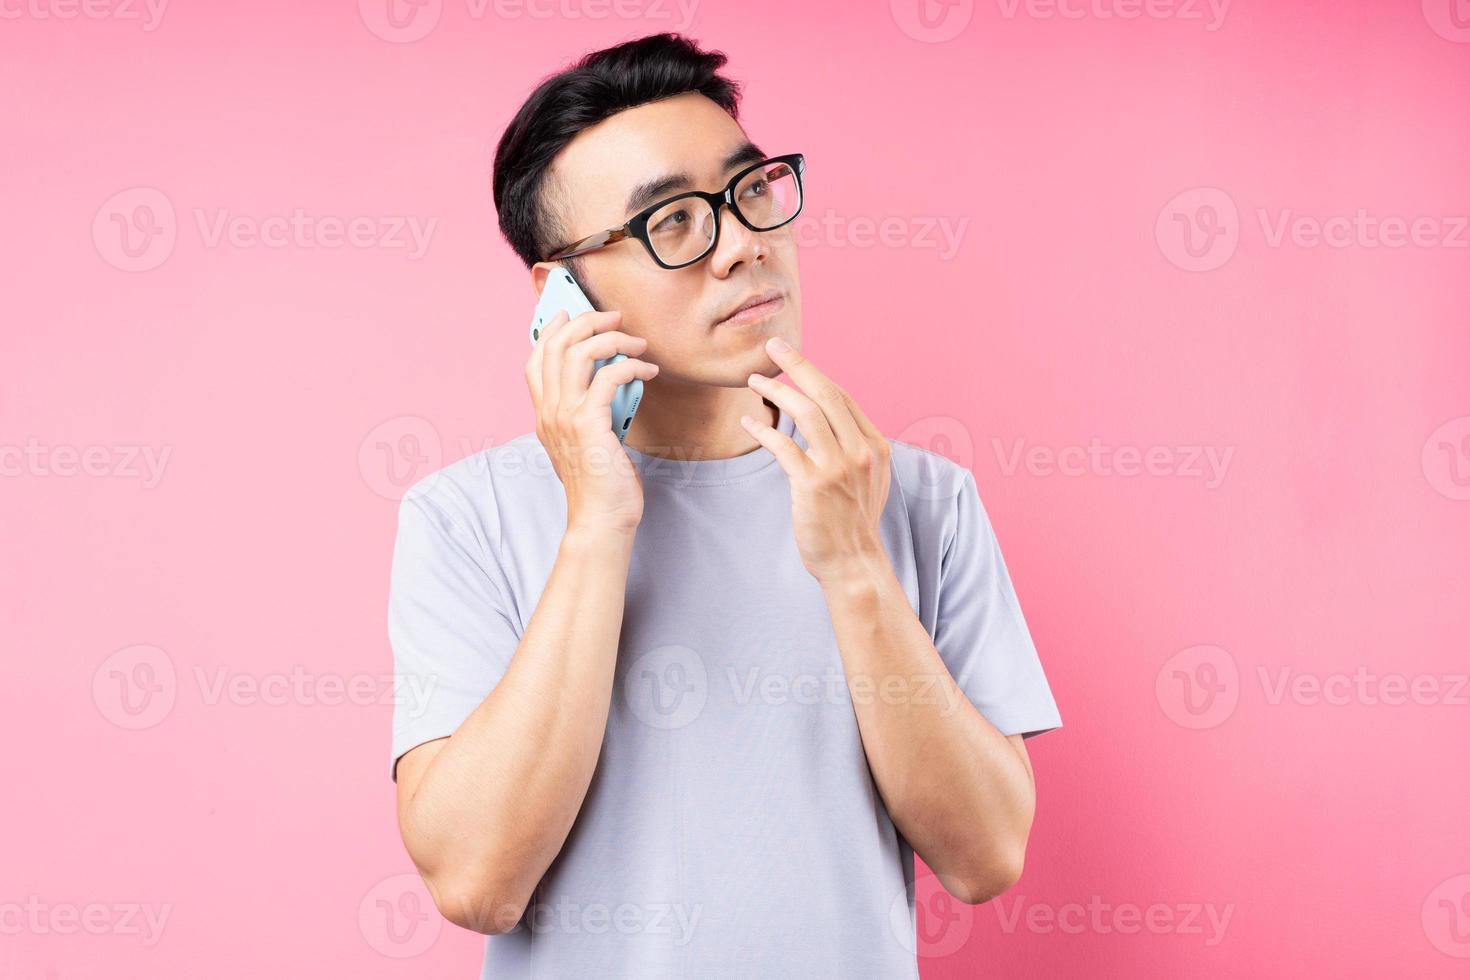 Retrato de hombre asiático con smartphone sobre fondo rosa foto